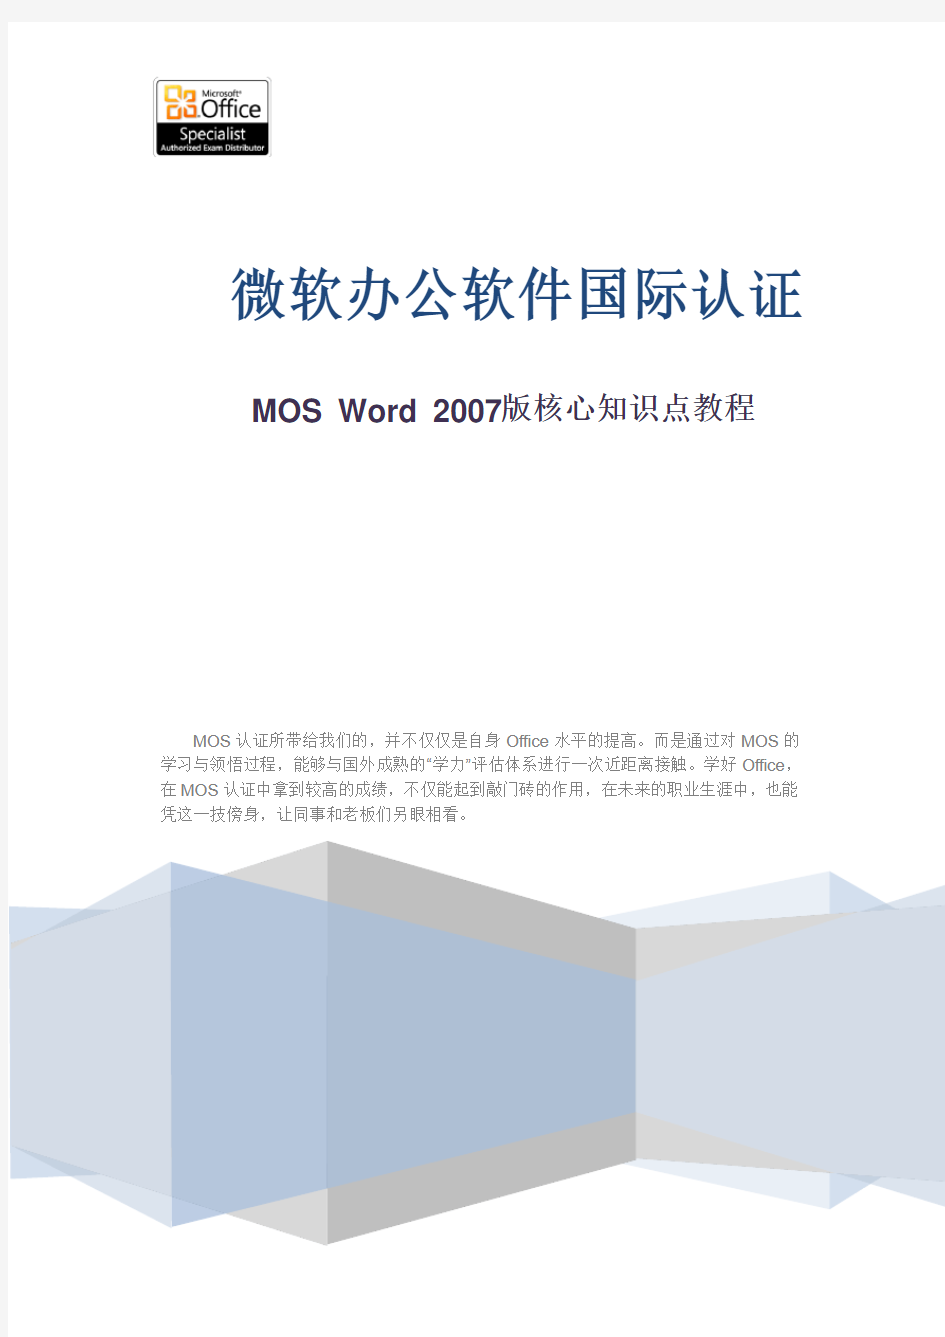 MOS Word 2007版核心知识点教程